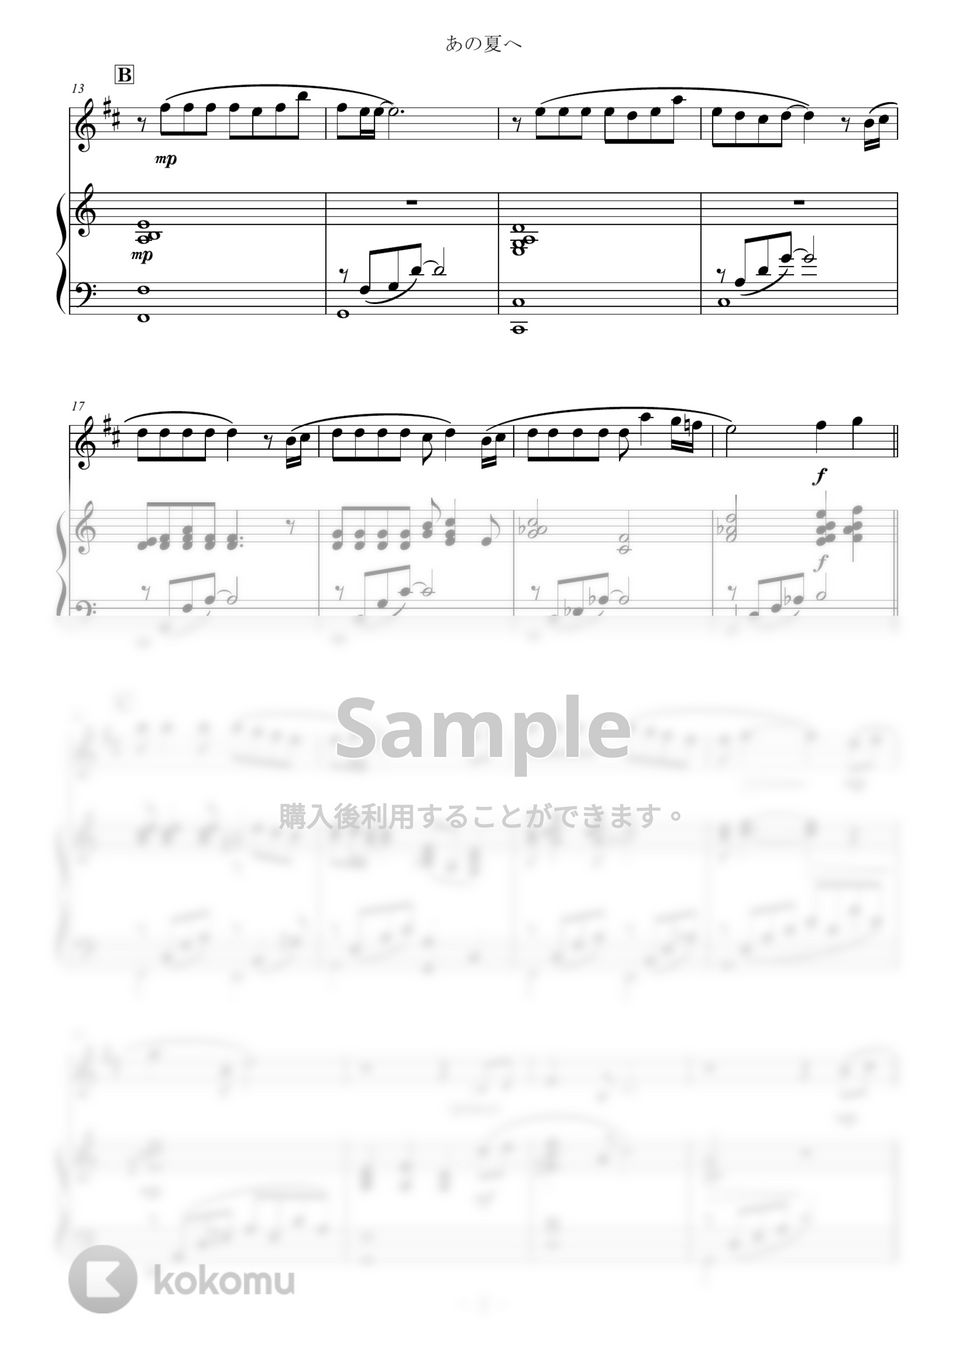 久石譲 - あの夏へ for Clarinet and Piano / from 千と千尋の神隠し One Summer's Day (スタジオジブリ/千と千尋の神隠し) by Zoe